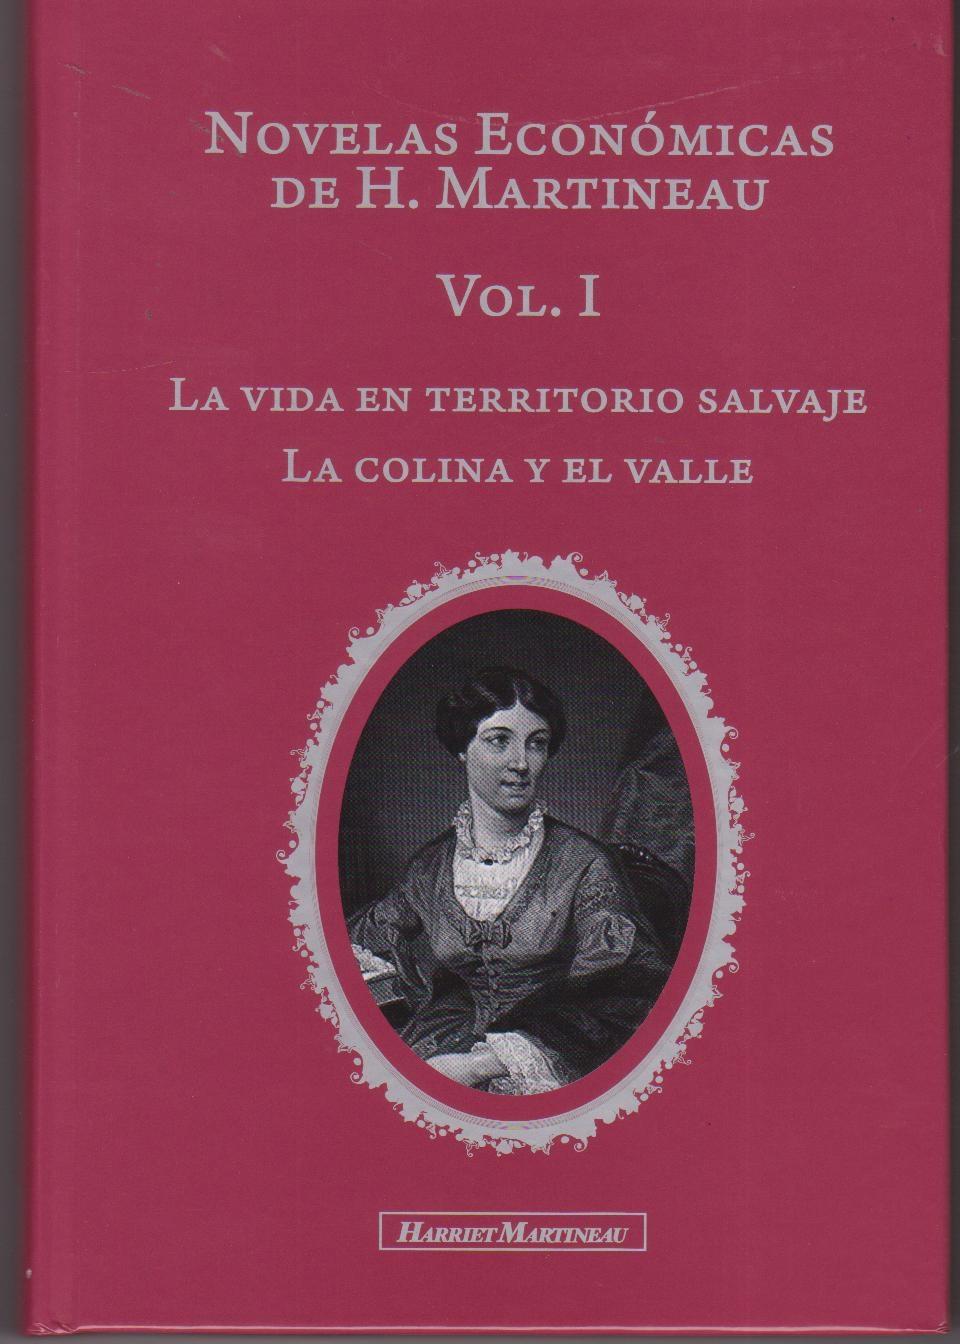 Novelas Económicas de H. Martineau Vol.I "La vida en territorio salvaje y La colina y el valle"